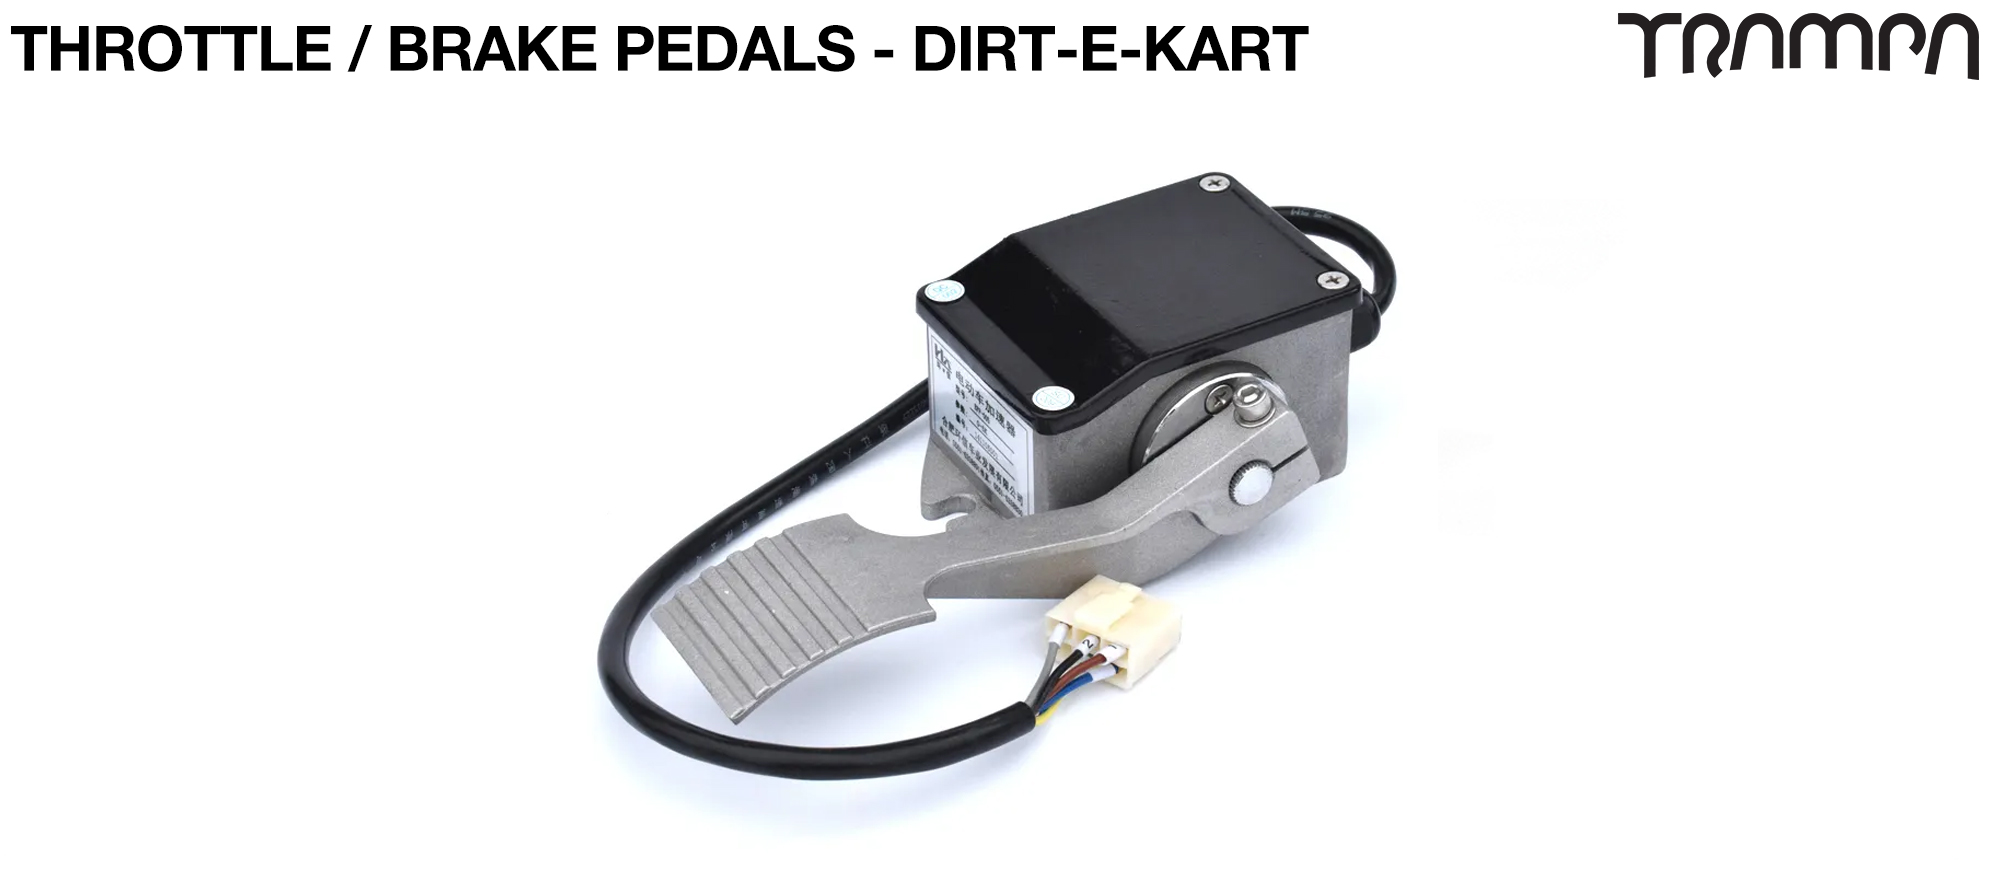 Throttle / Brake Pedals